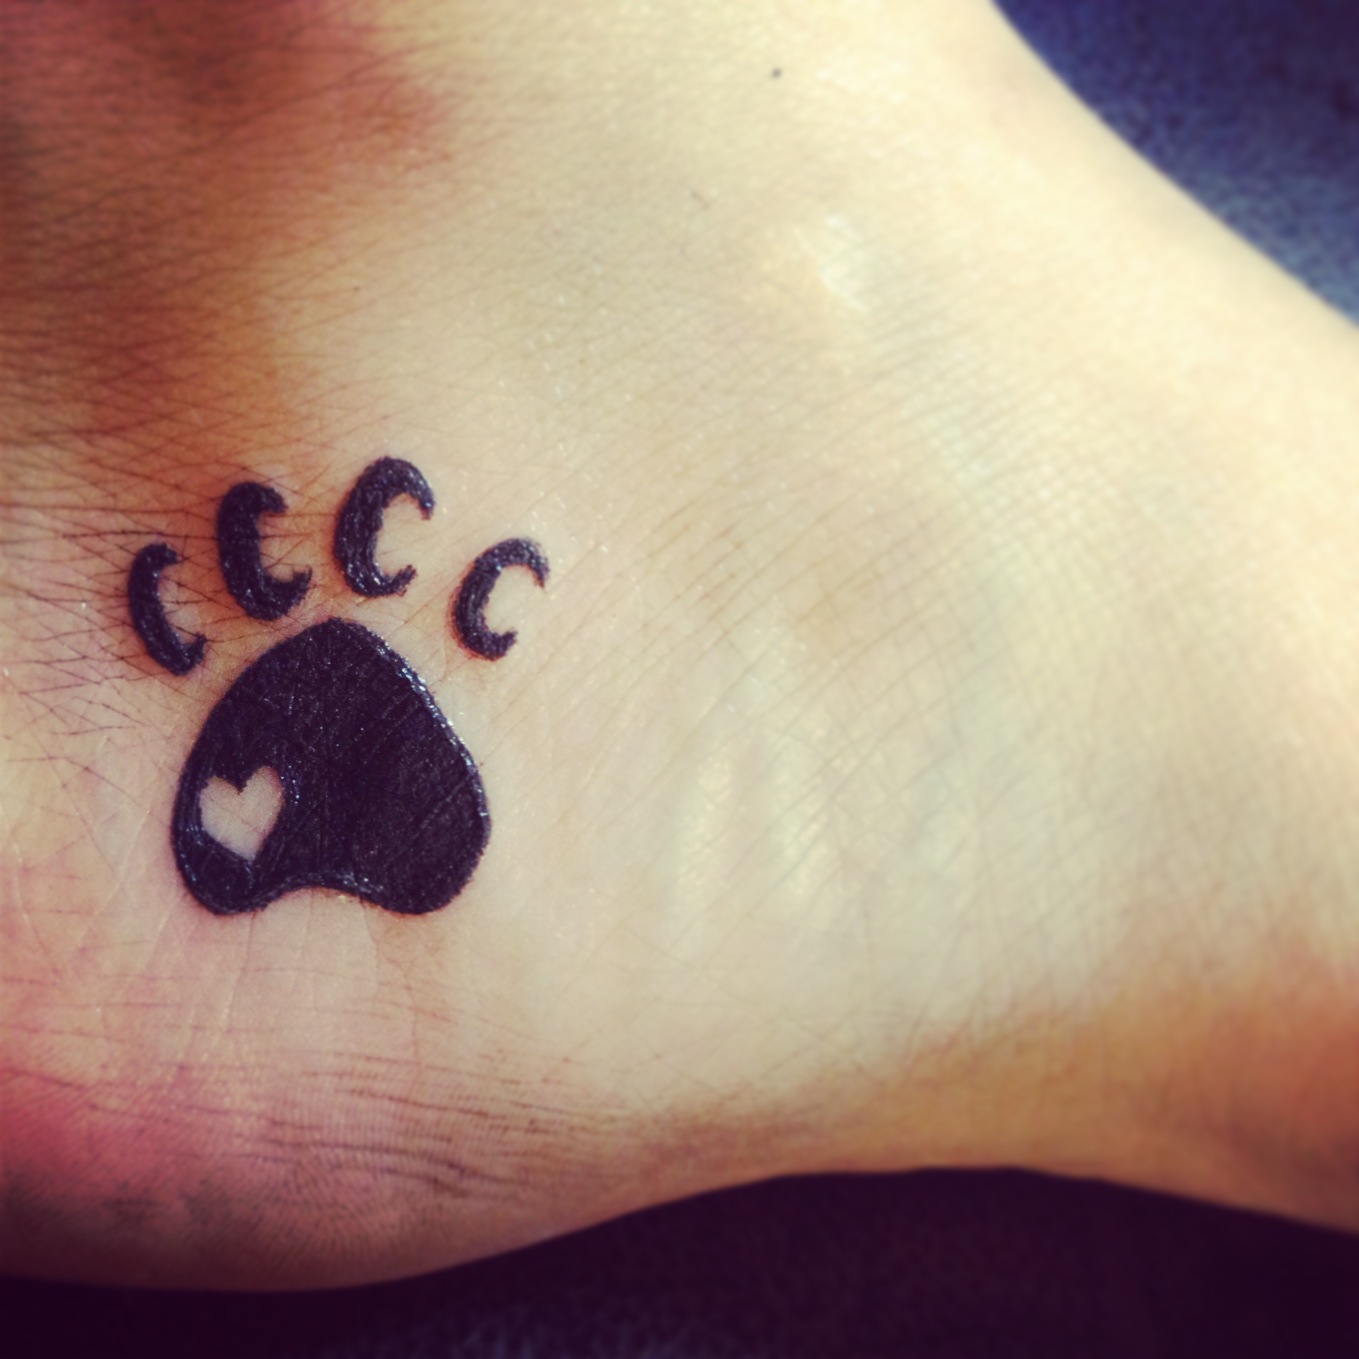 Small paw tattoo on foot - | TattooMagz › Tattoo Designs ...